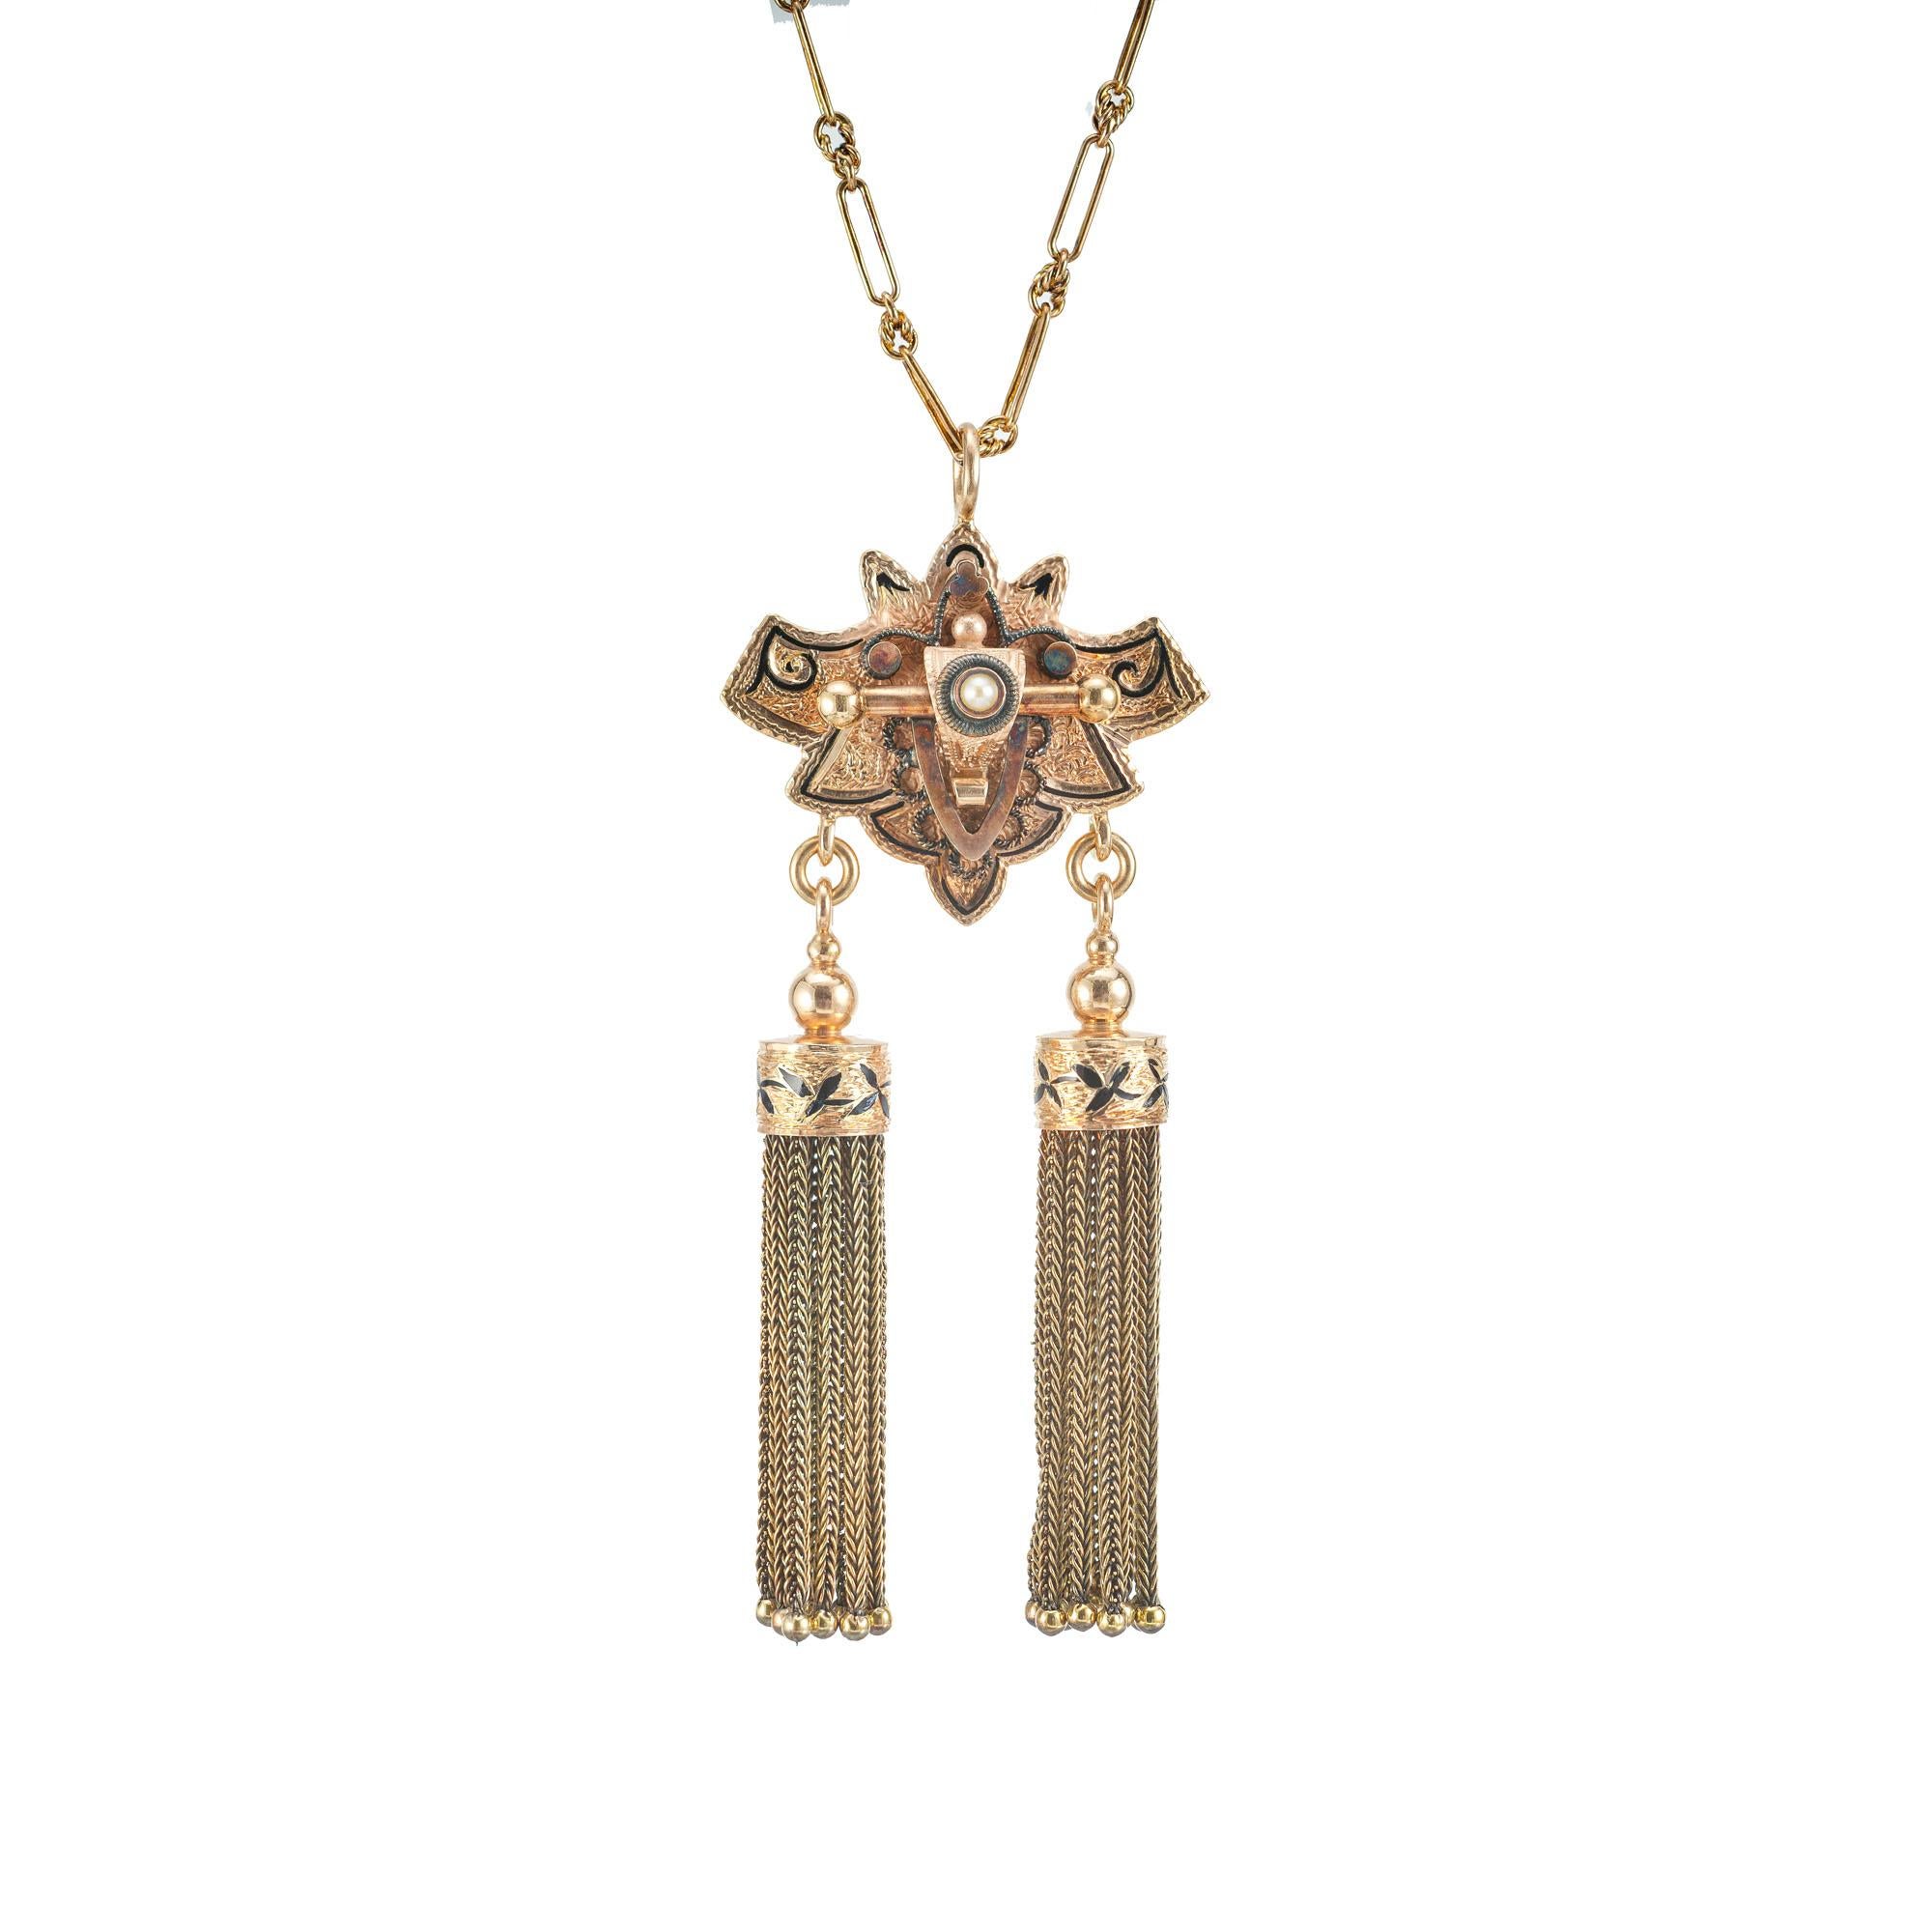 Viktorianische 1880-1890 Perle Rose Gold Quaste Anhänger Halskette. Handgefertigte Kette aus Roségold. Der Anhänger in der Mitte hatte früher eine Stelle, an der man eine Kette oder Perlen anbringen konnte. In der Mitte befindet sich eine